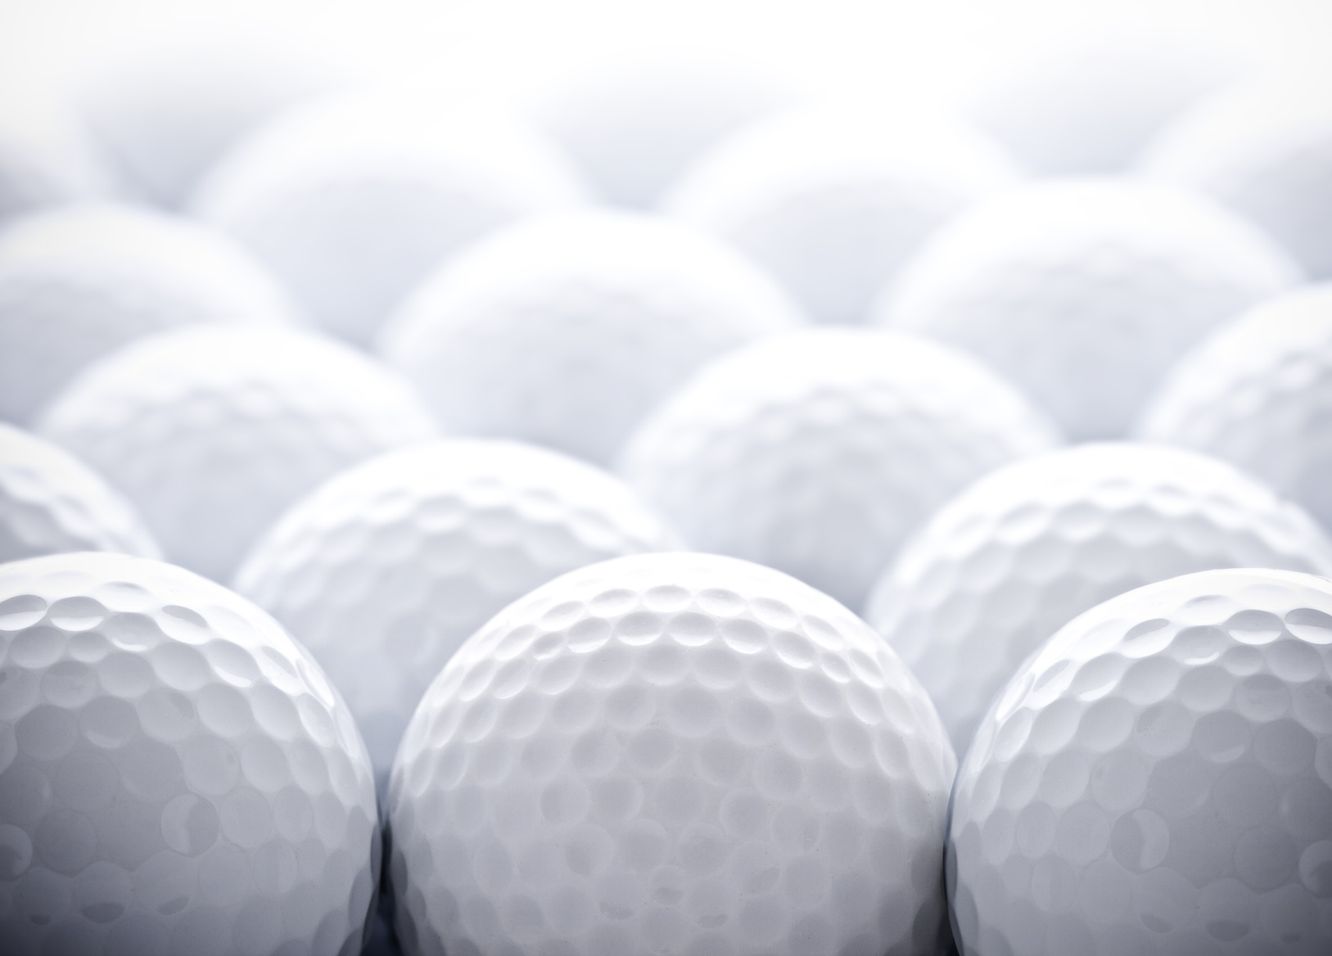 Andbank fondos de inversion imagen pelotas de golf